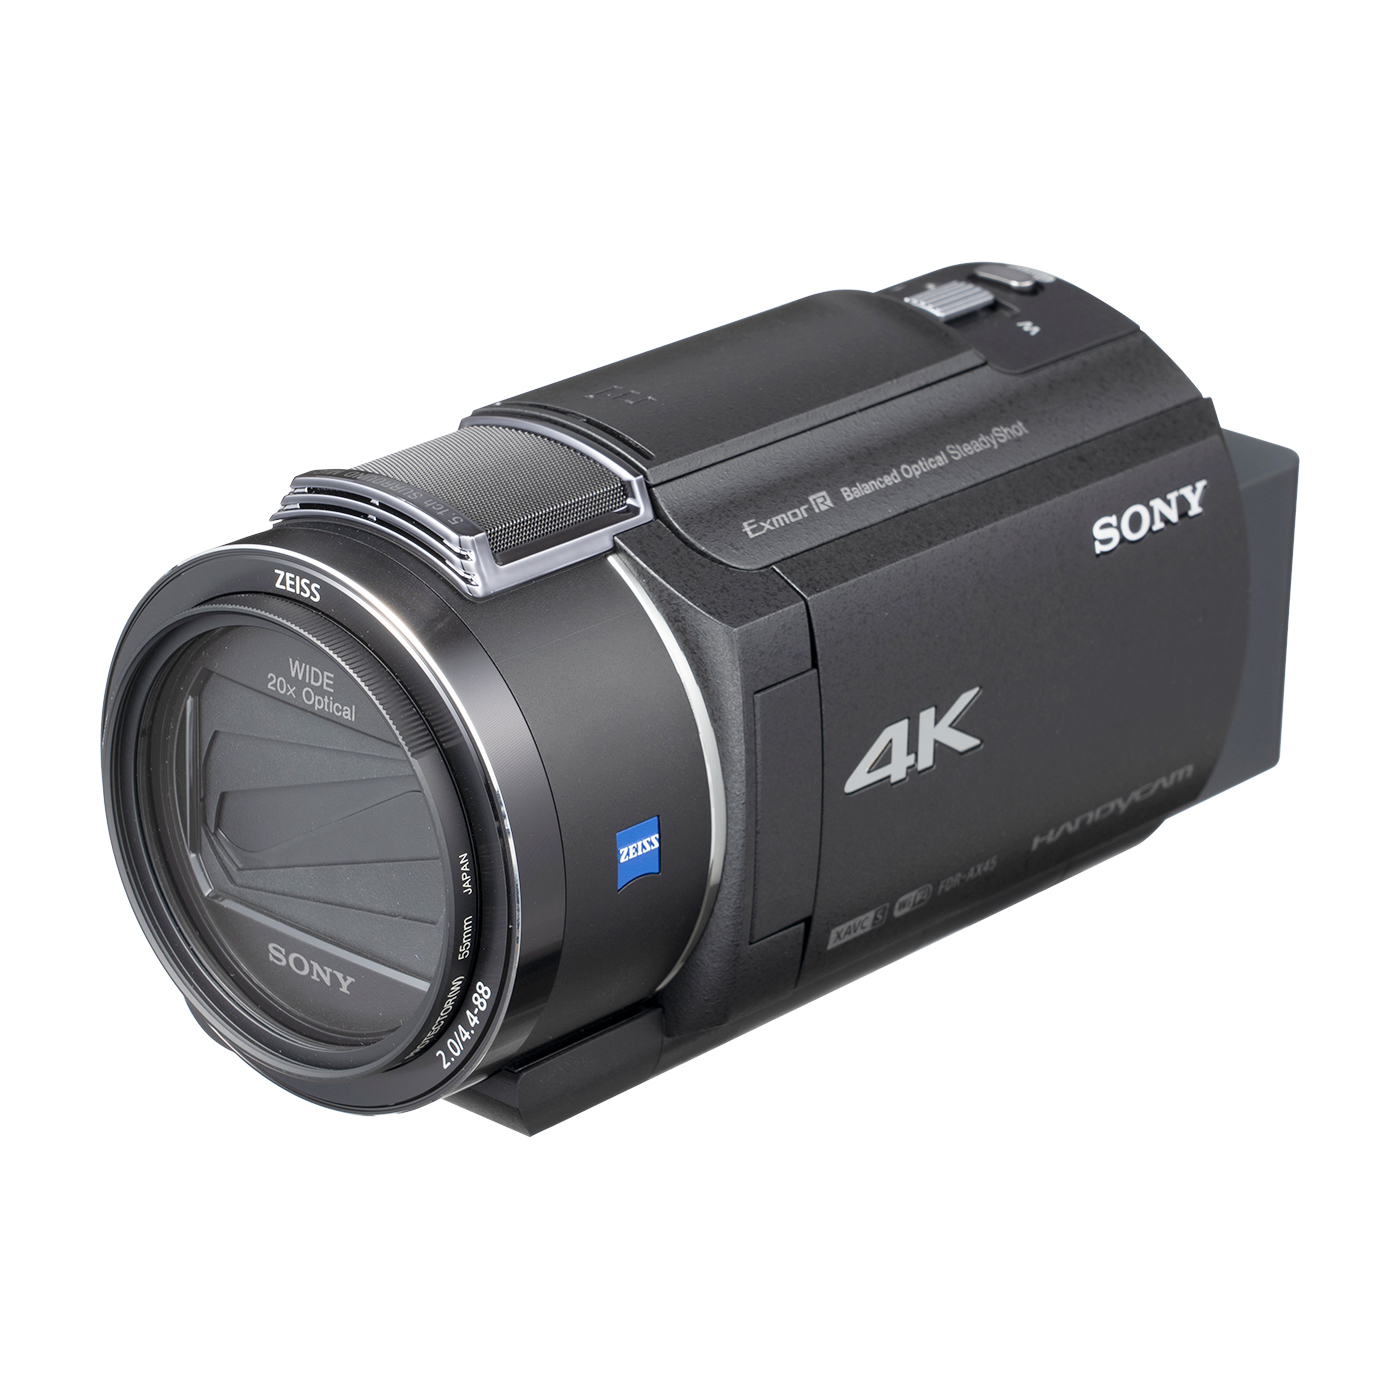 ソニー デジタルビデオカメラレコーダー FDR-AX45をレビュー！口コミ・評判をもとに徹底検証 | マイベスト